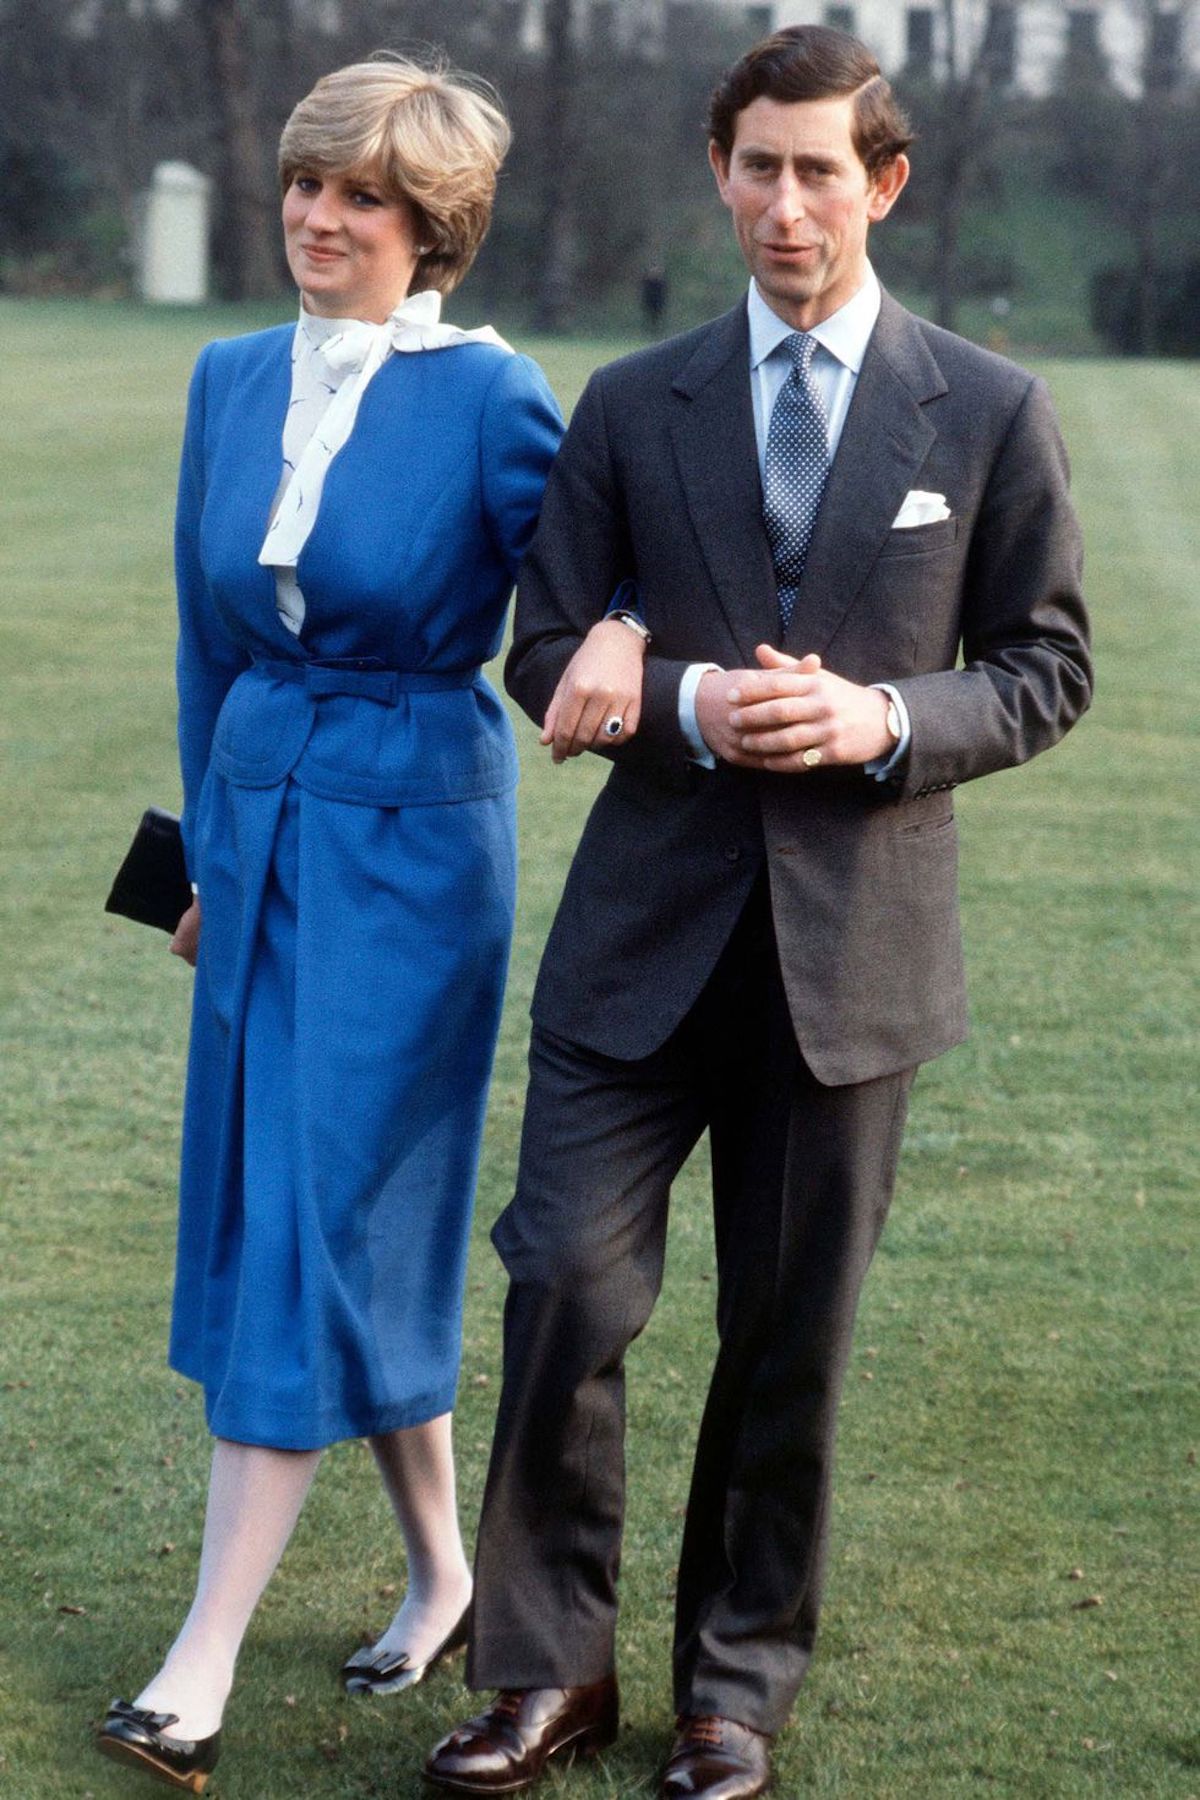 Принцесса Диана и принц Чарльз, 1981 год